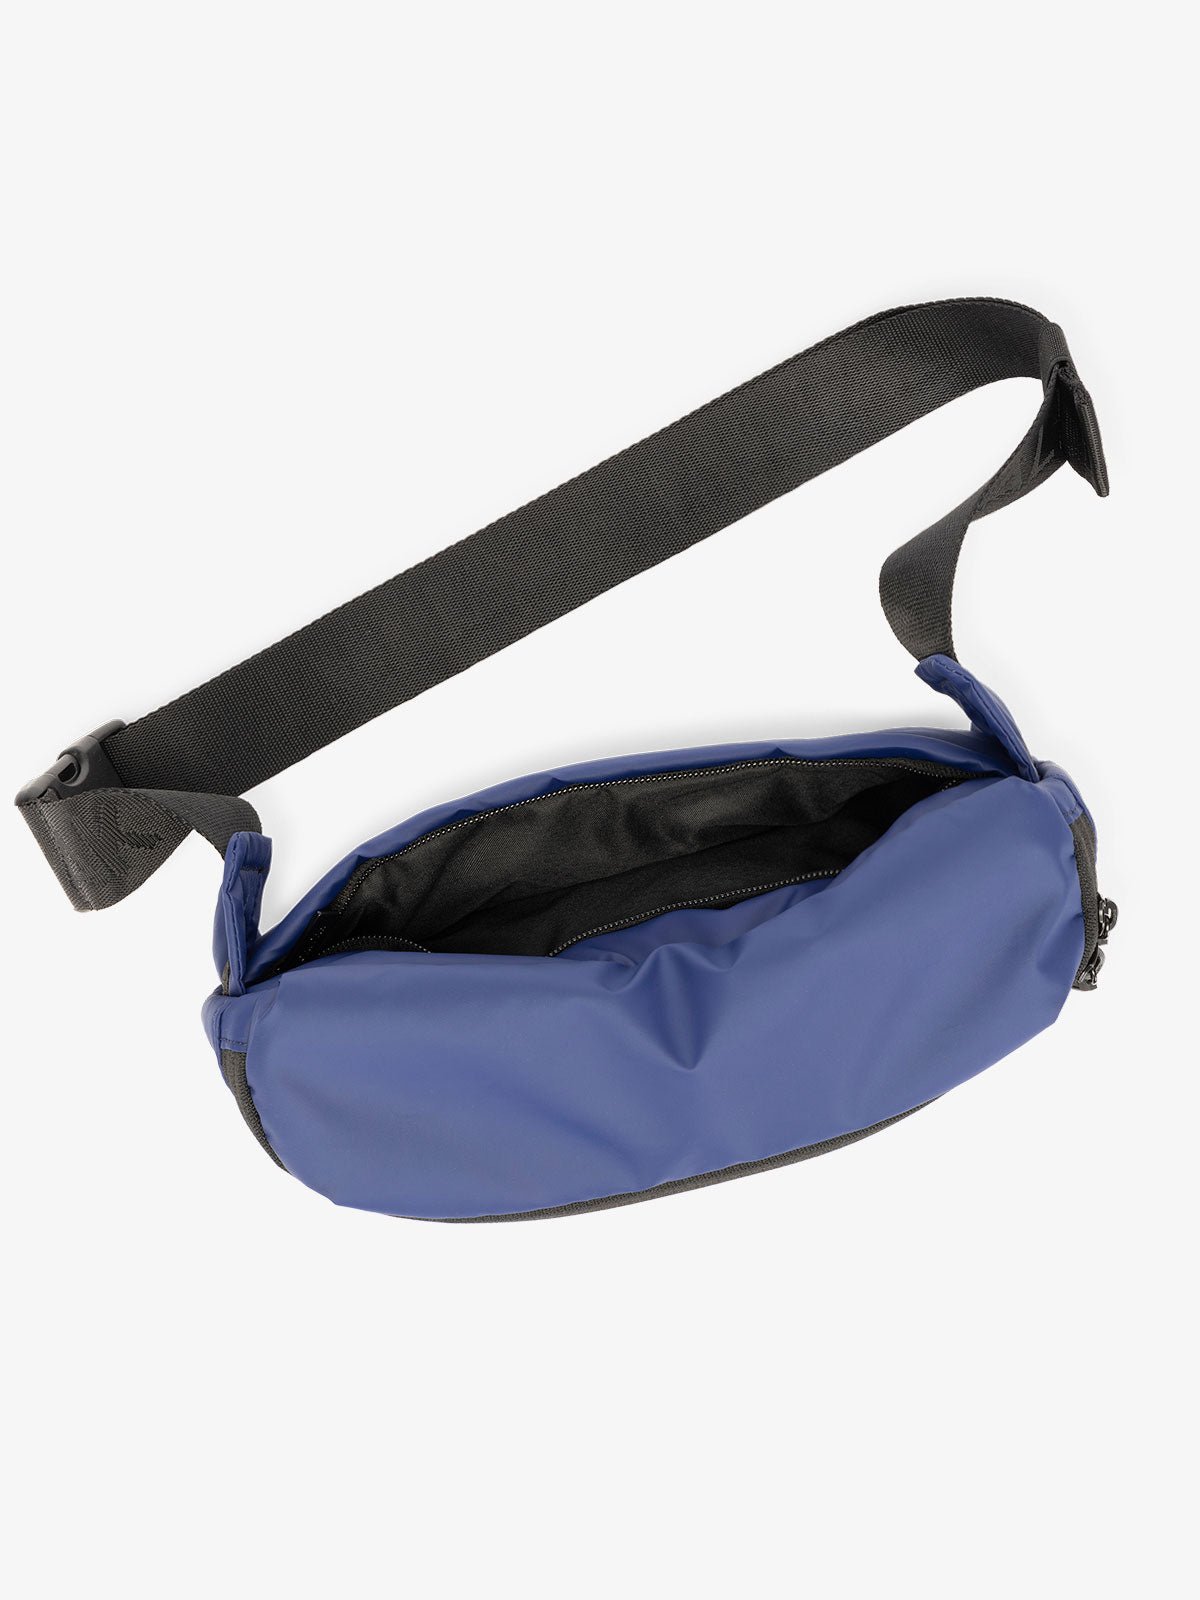 CALPAK Luka Belt Bag with adjustable strap and hidden back pocket in dark blue